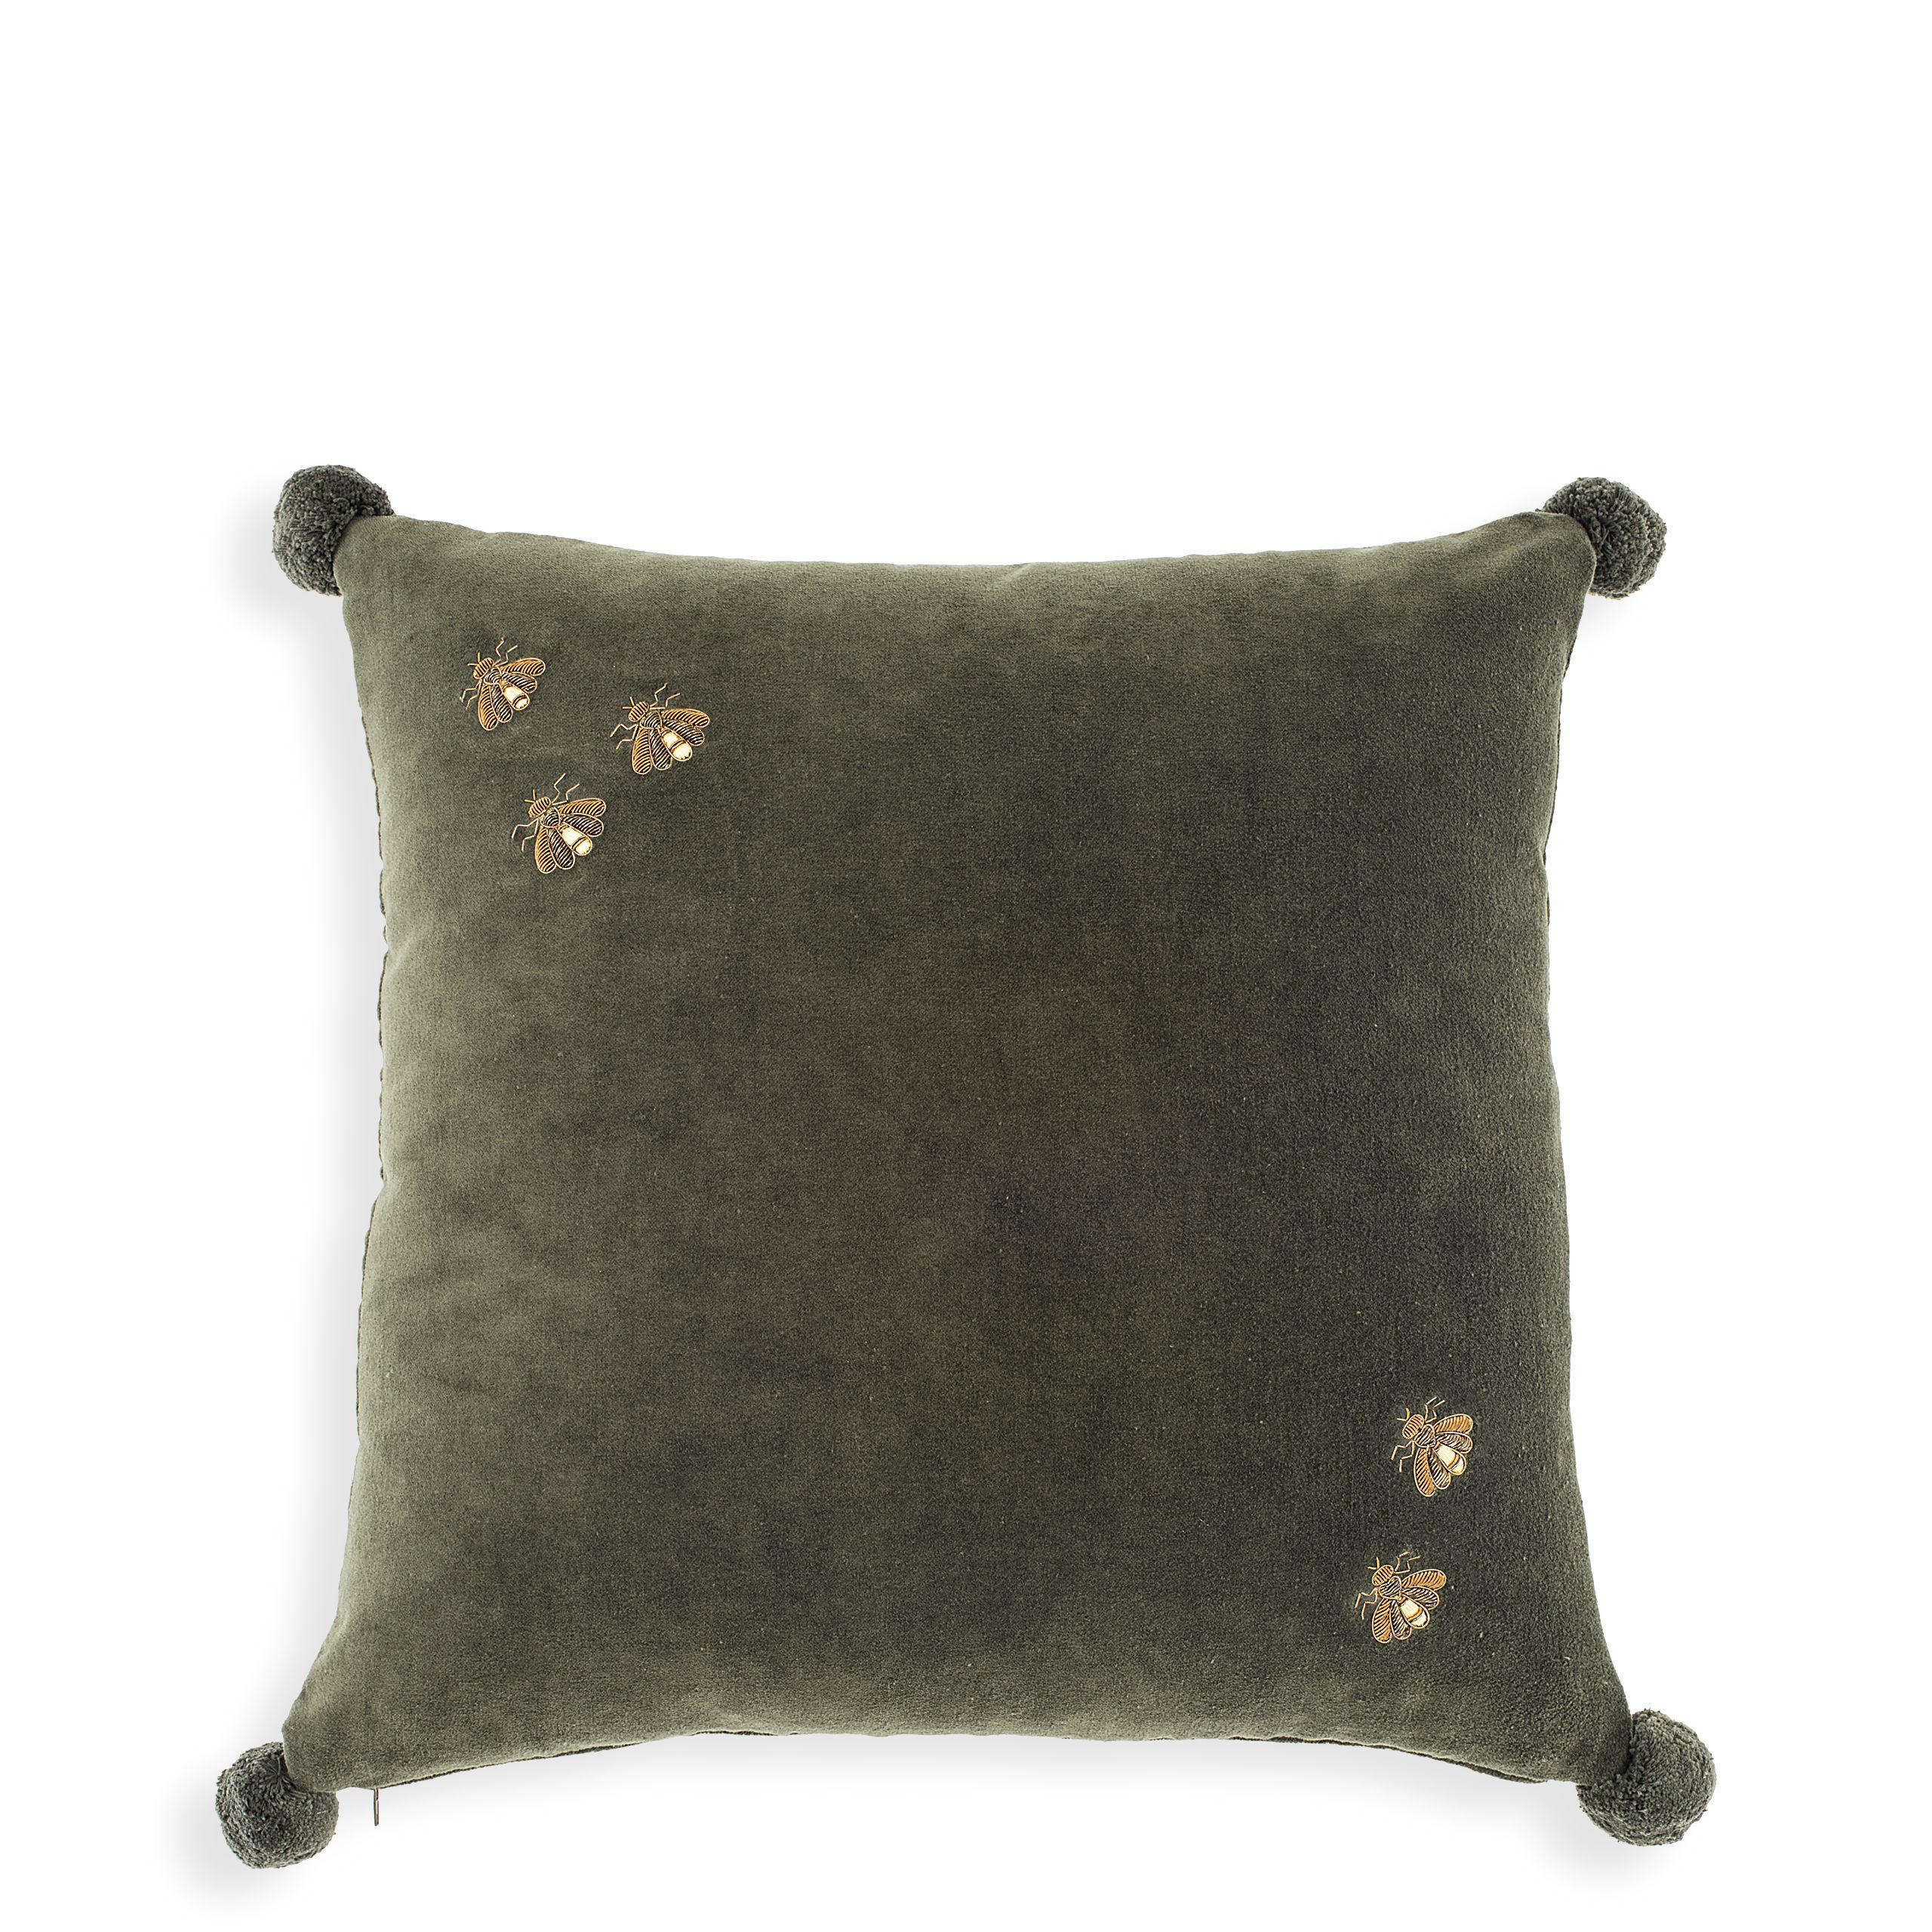 Купить Декоративная подушка Cushion Salgado в интернет-магазине roooms.ru